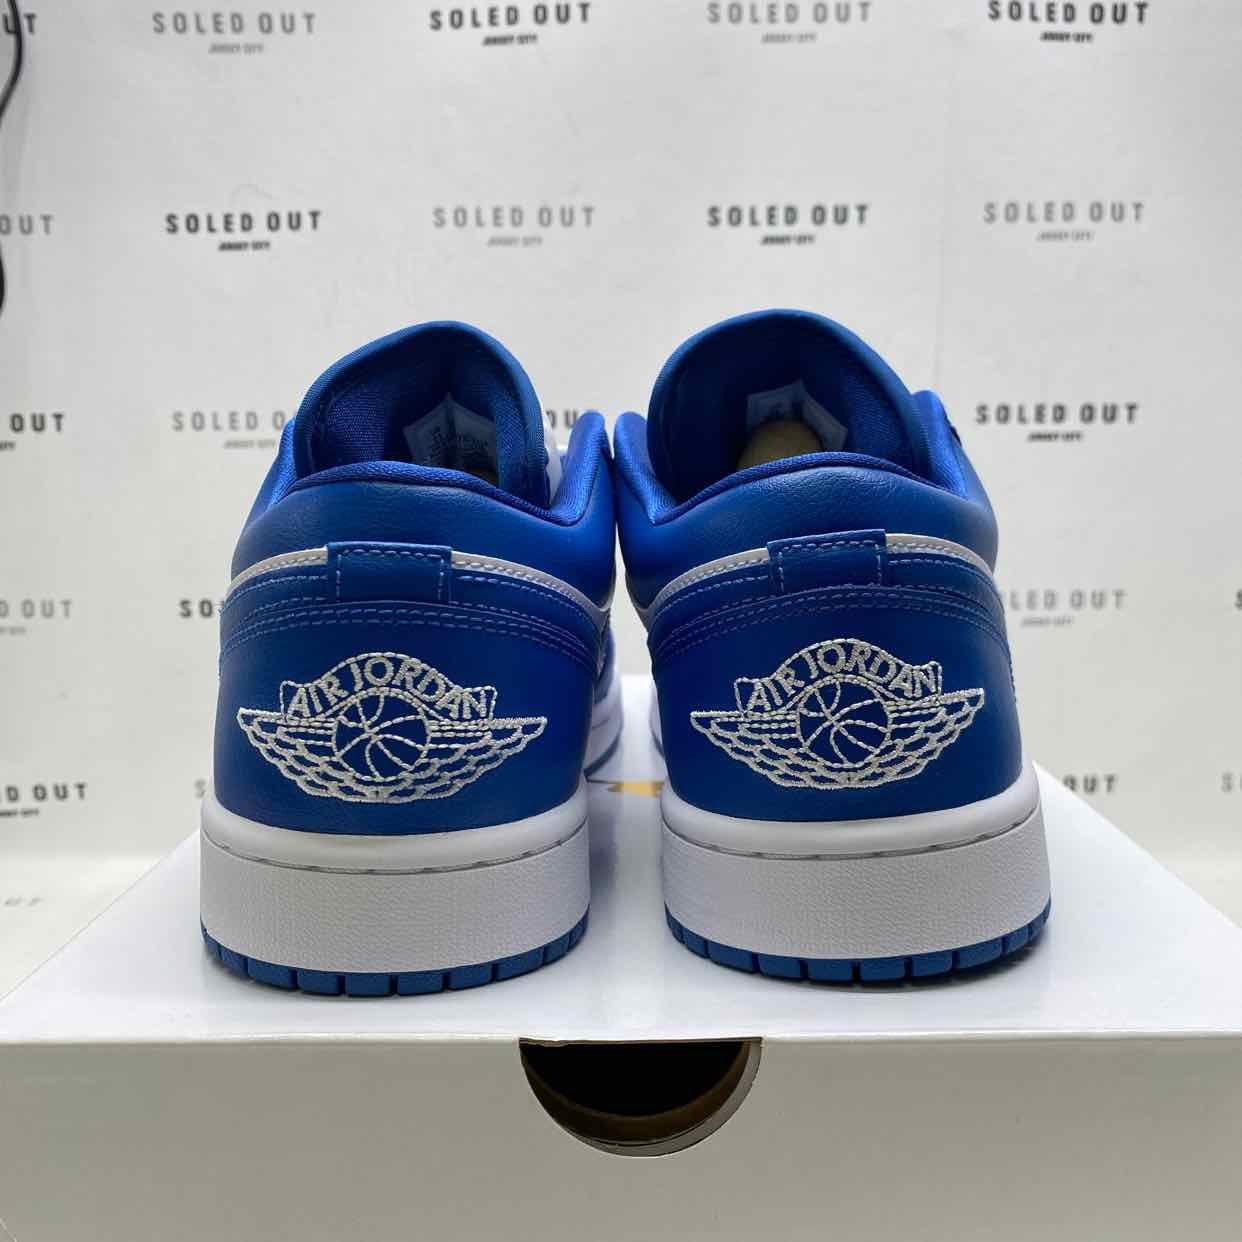 Air Jordan (W) 1 Low "Marina Blue" 2022 New Size 11W